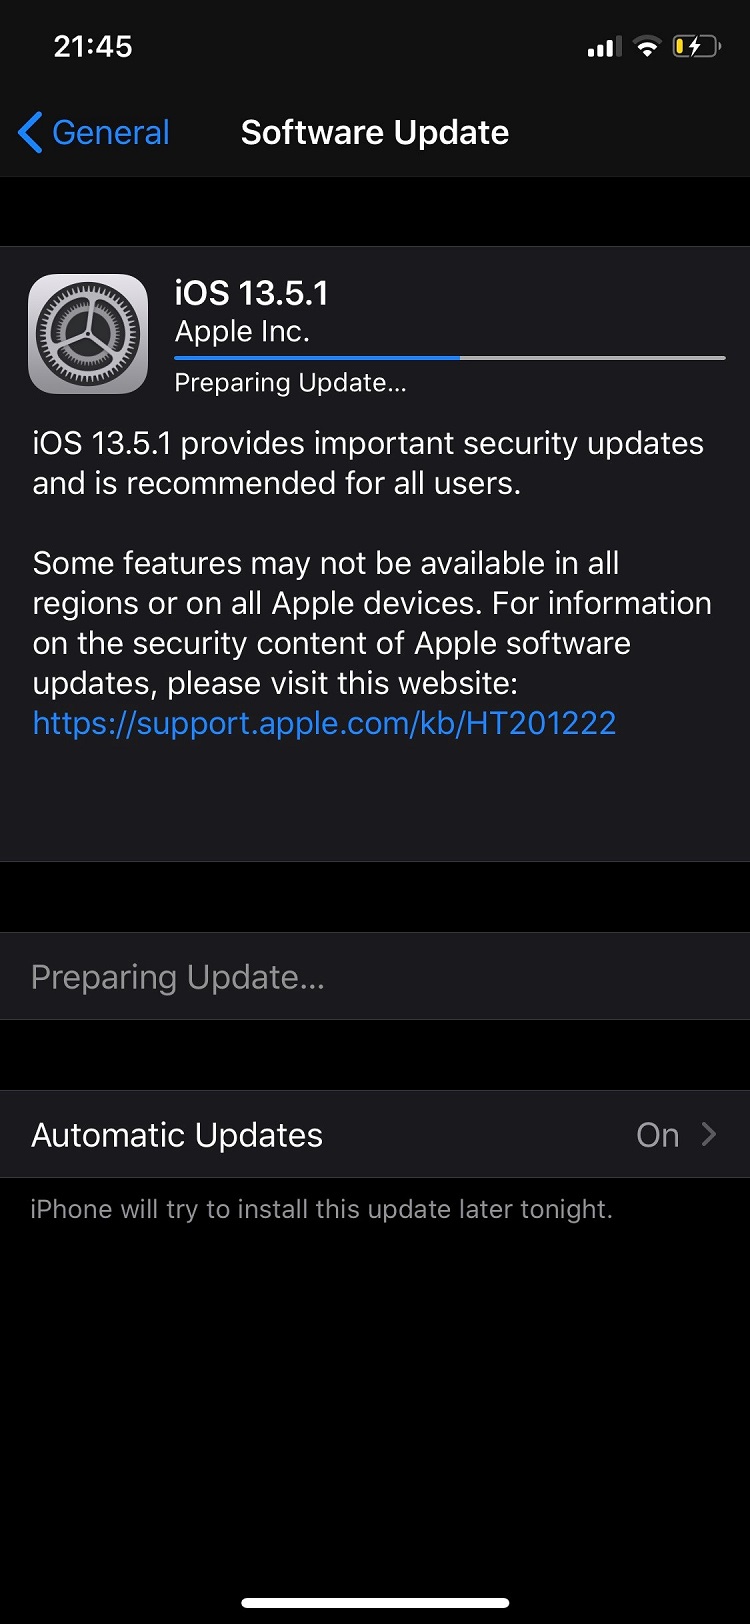 După ce mai mulți utilizatori au raportat probleme după instalarea update-ului de iOS 13.5, Apple vine cu un patch (iOS 13.5.1) care să repare problemele generate de update-ul precedent plus o vulnerabilitate critică. Din păcate e o situație mult prea familiară ...